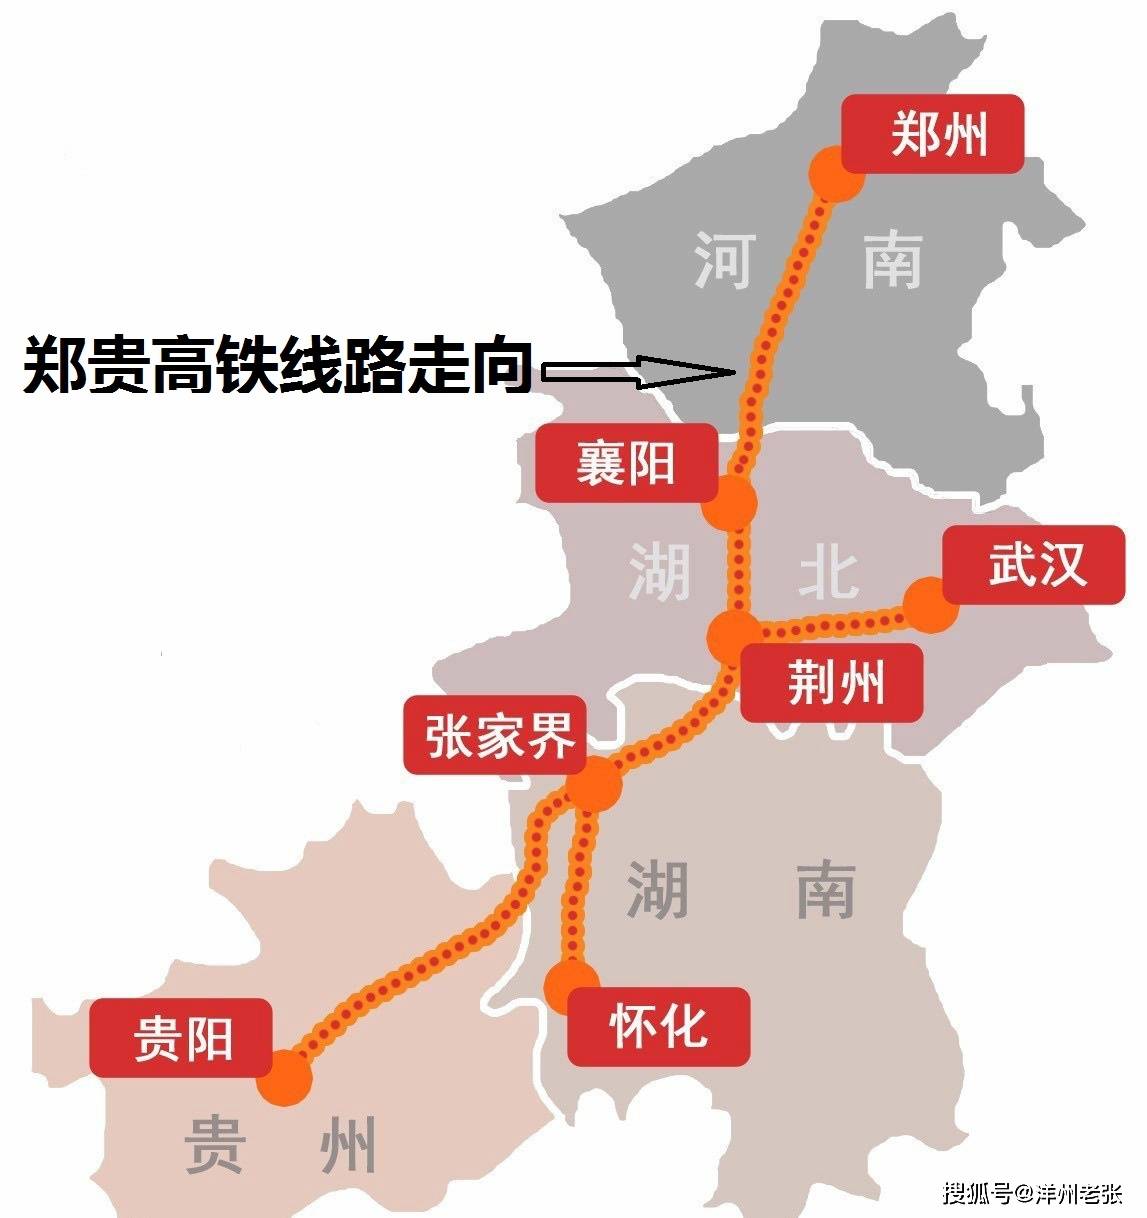 老张就向大家介绍一条连通豫鄂湘黔四地的千亿高铁大通道